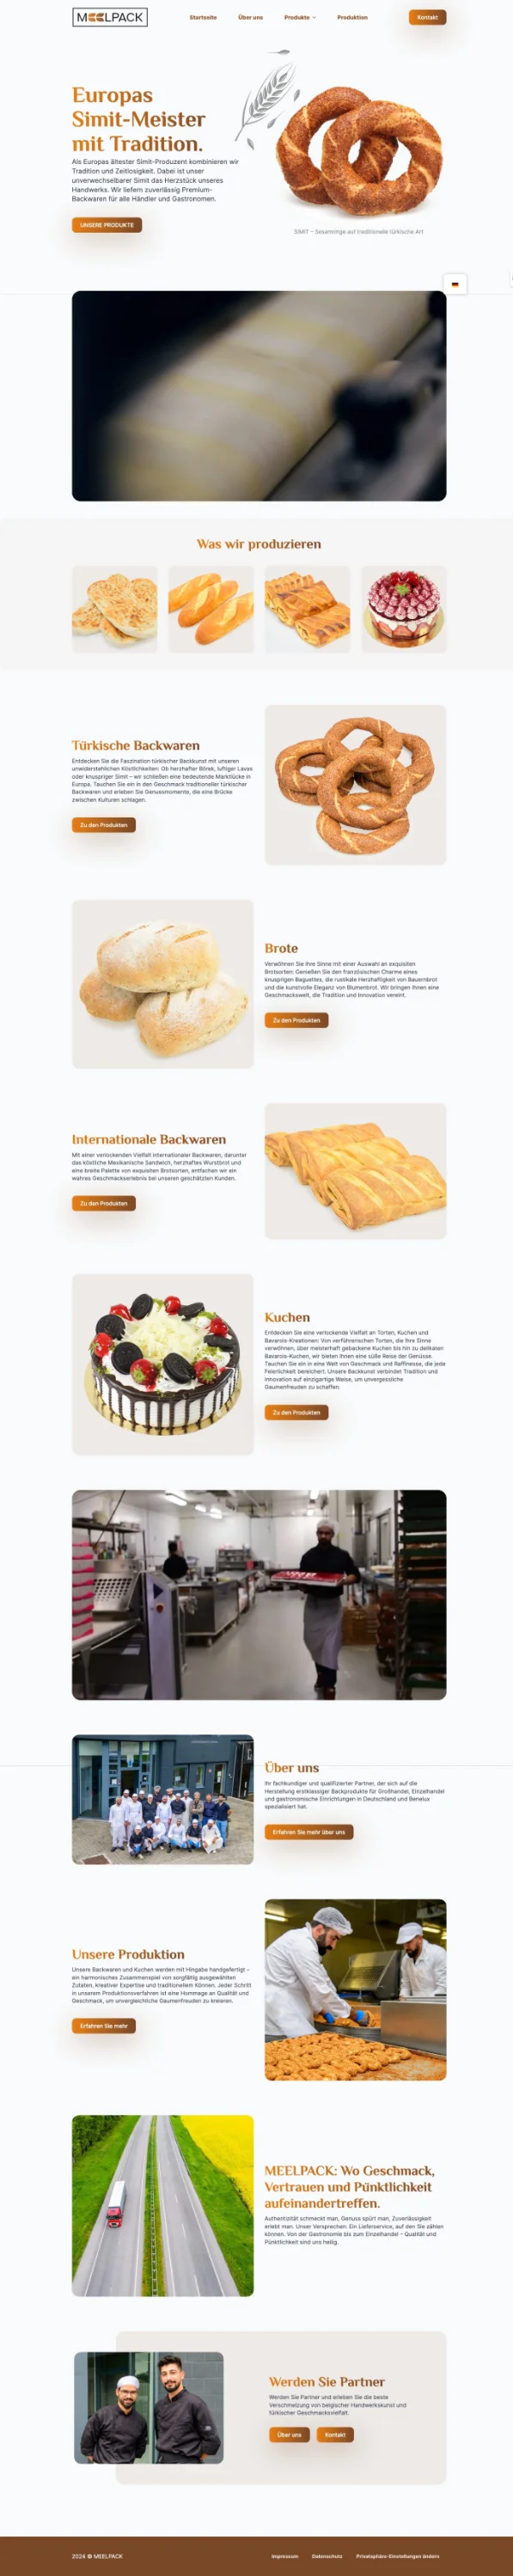 Webdesign Screenshot für die Bäckerrei Meelpack